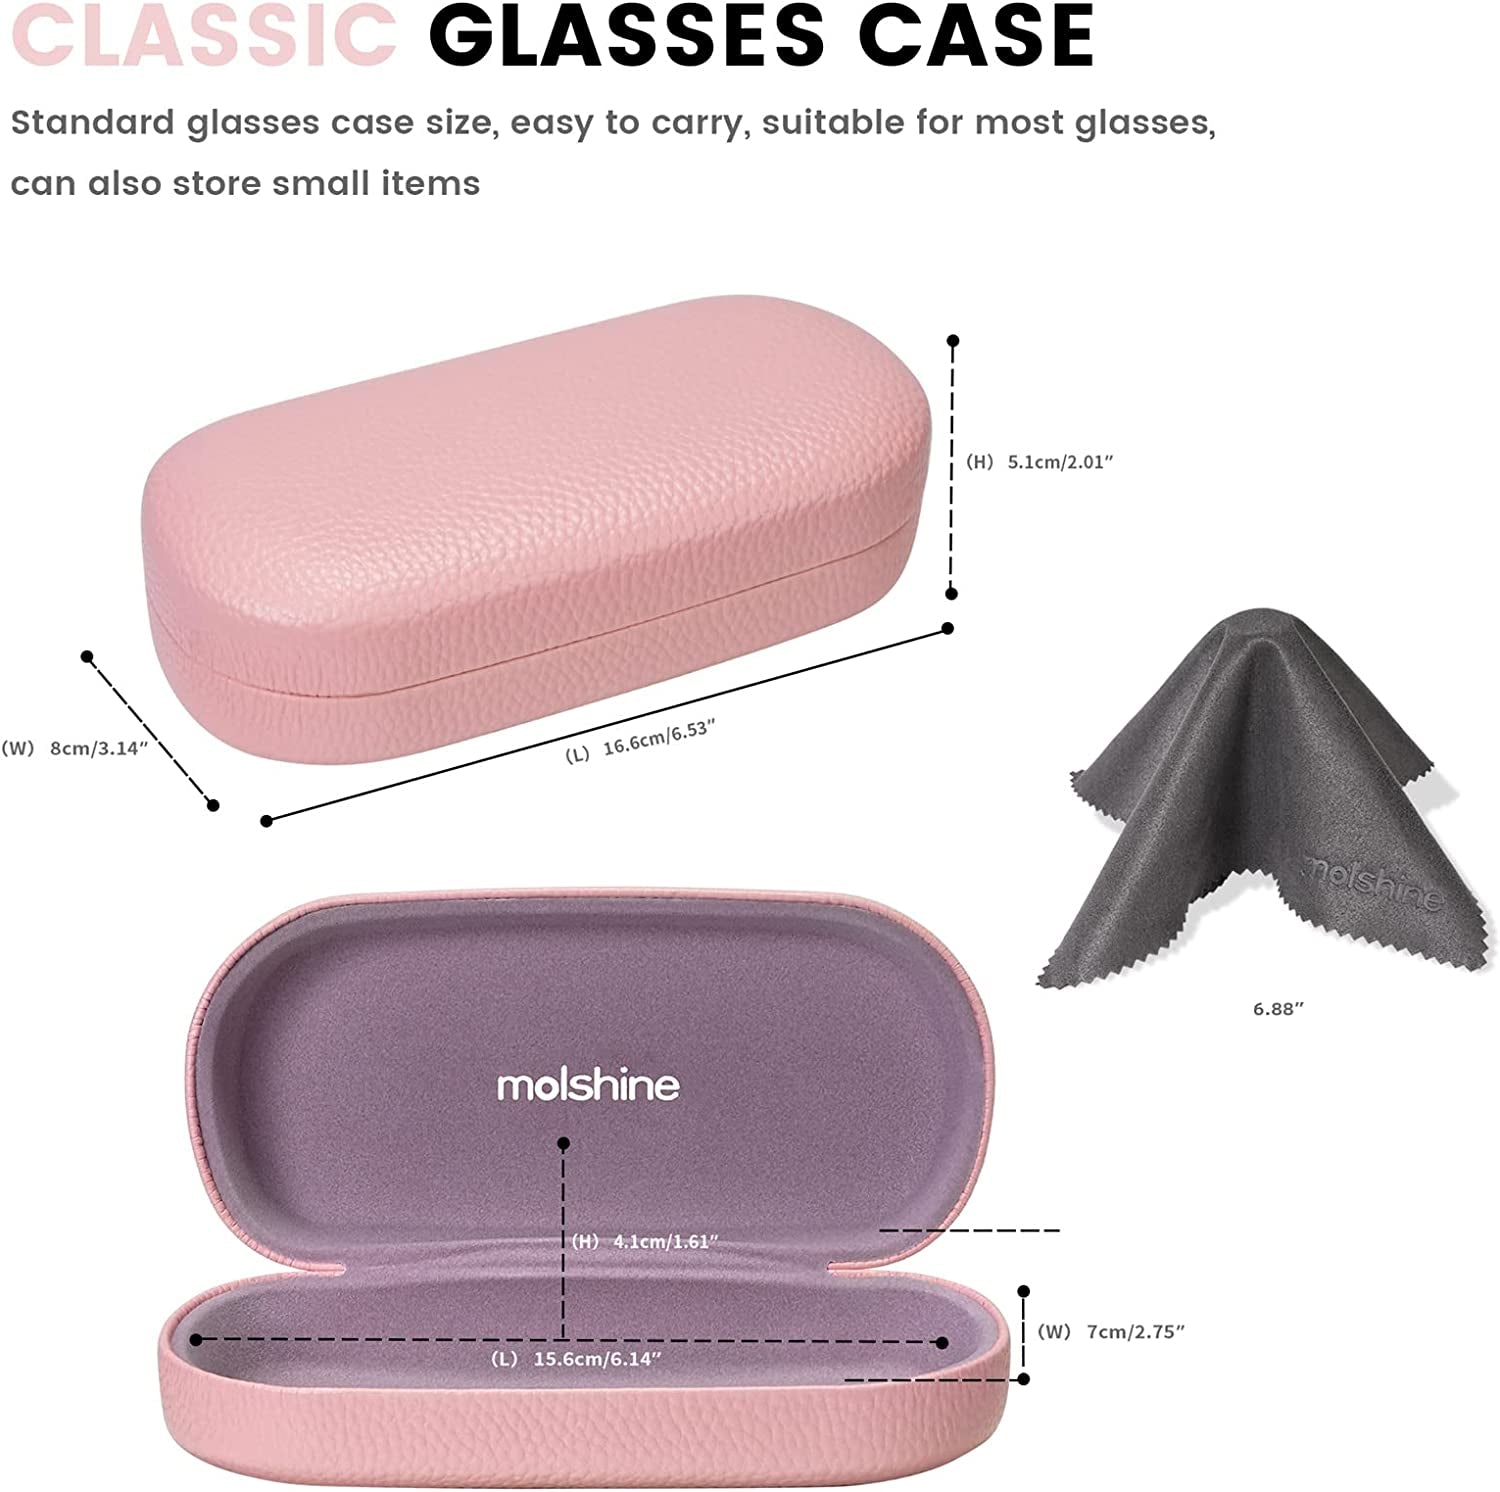 Molshine Hard Shell Leather Sunglasses Case,Classic Large Glasses Case for Women Men,Sunglass Eyeglasses